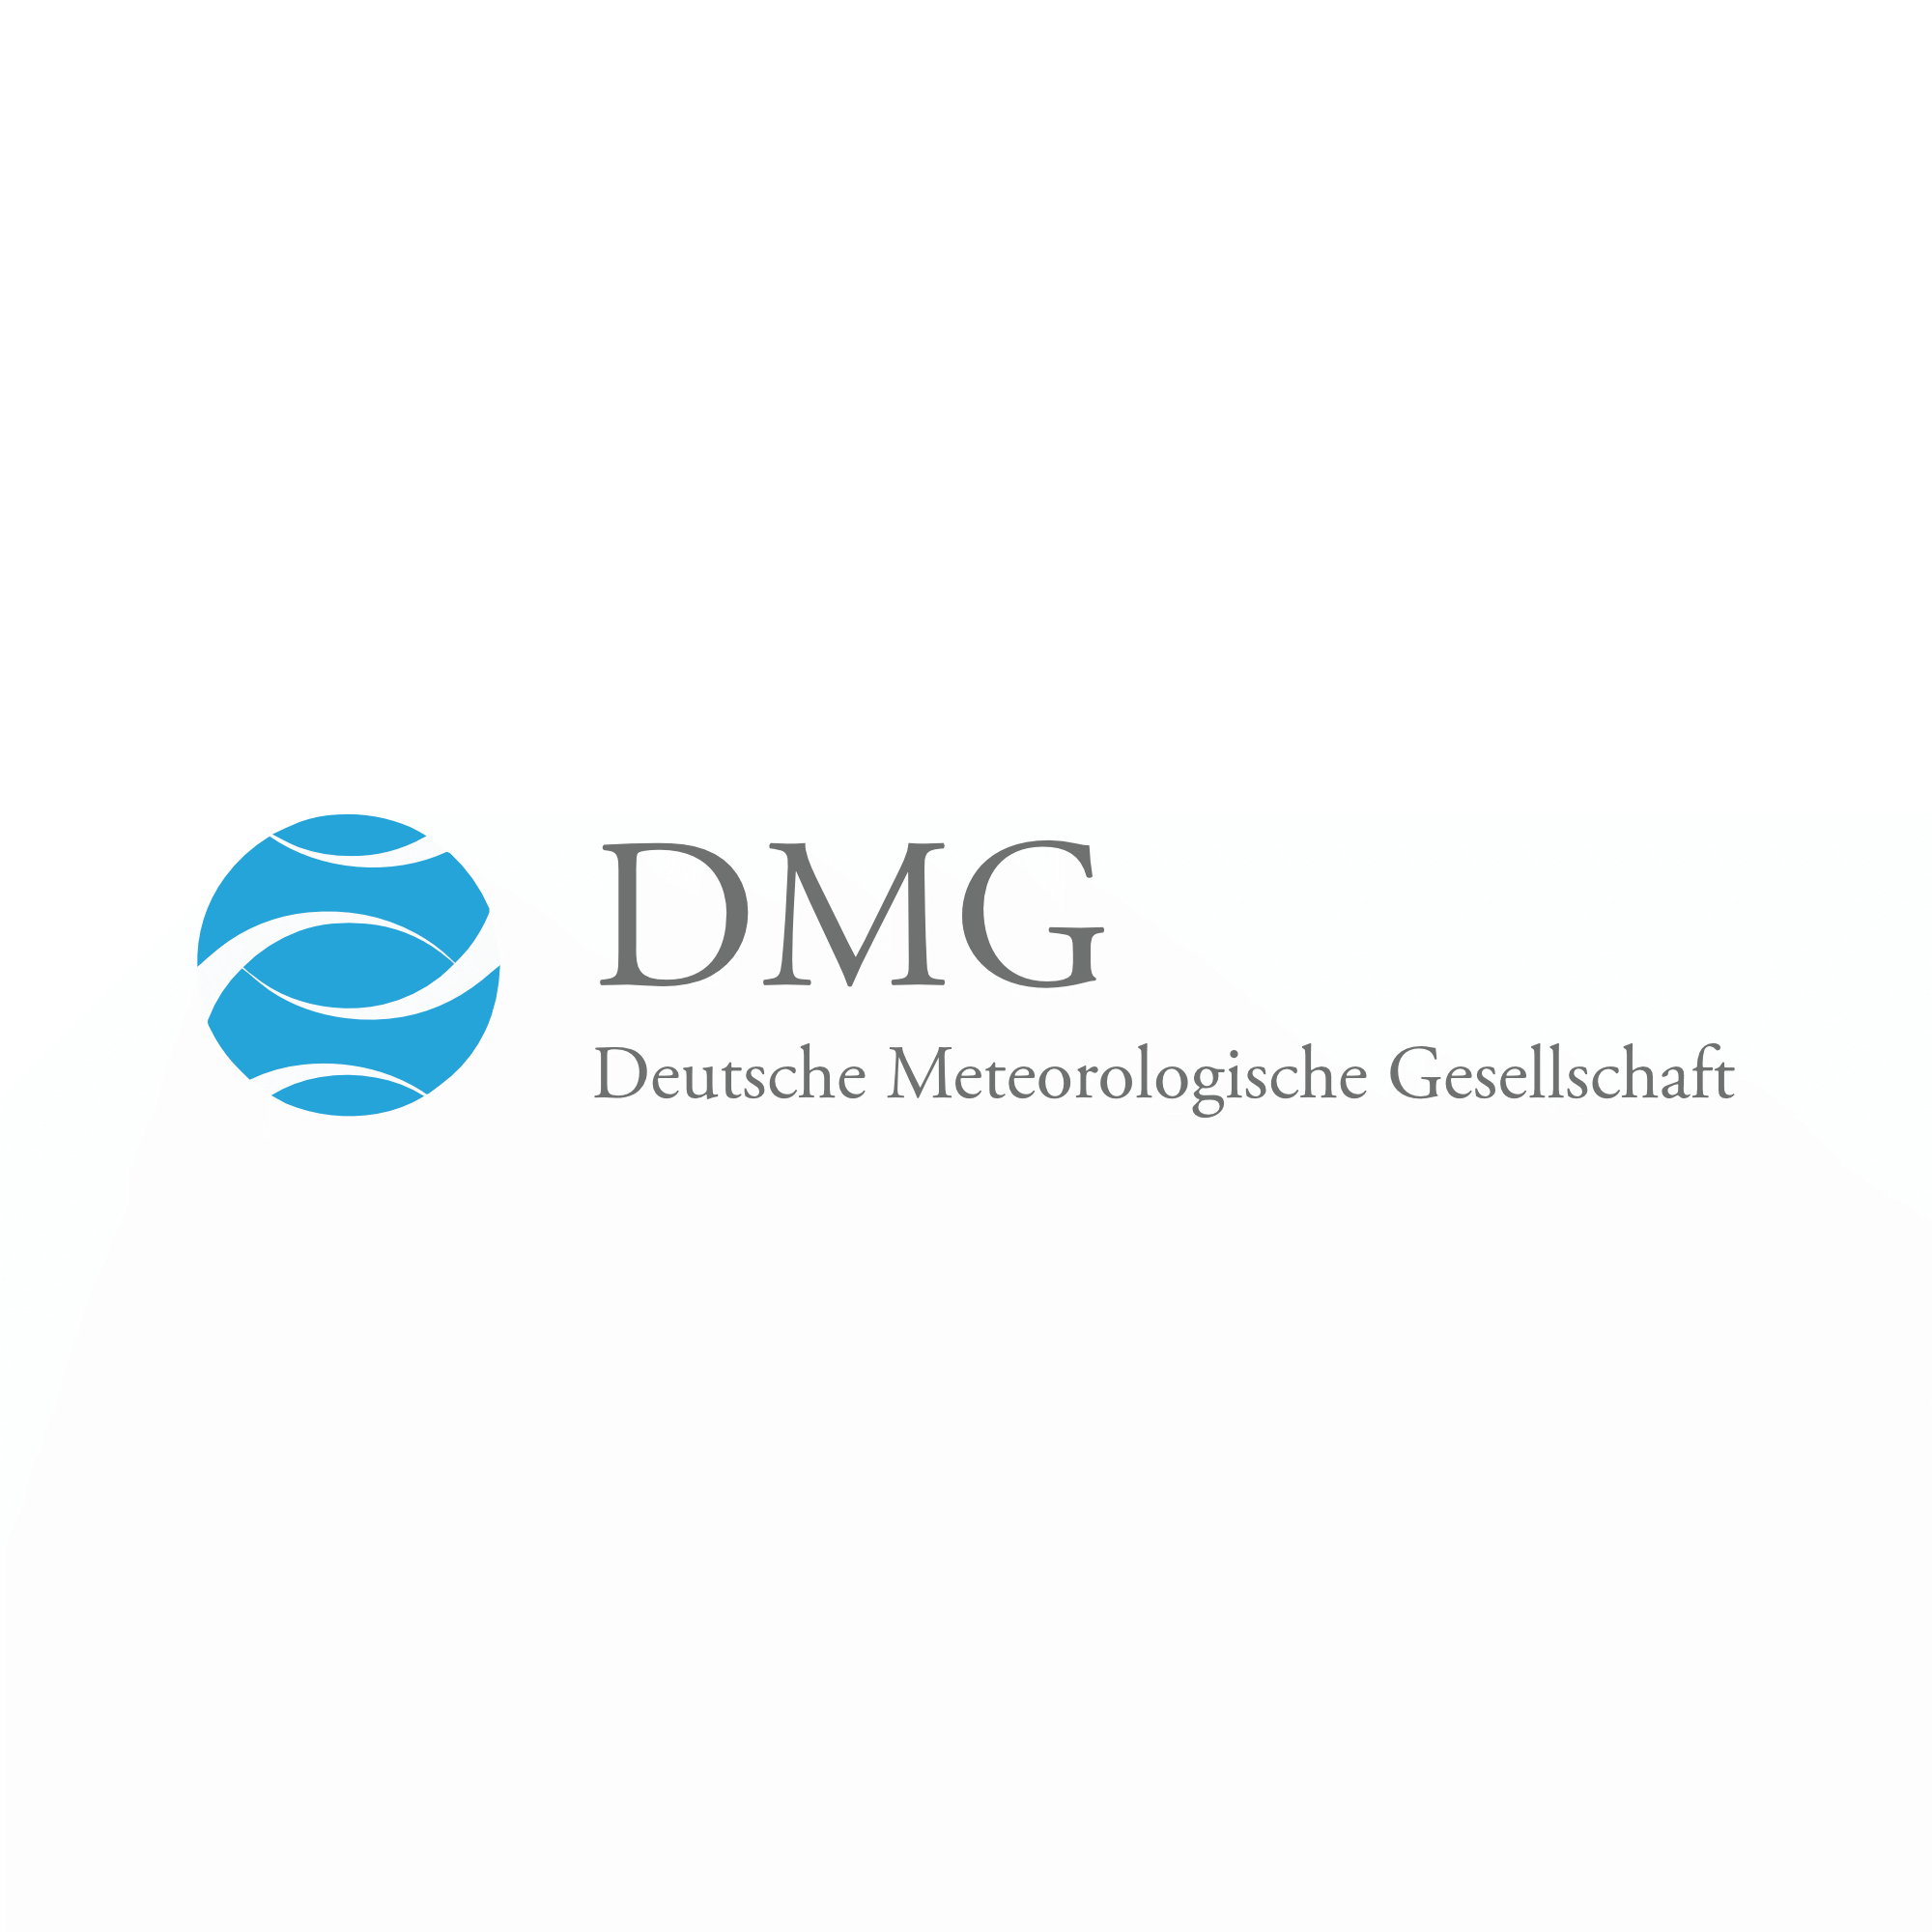 Logo of Deutsche Meteorologische Gesellschaft (DMG)